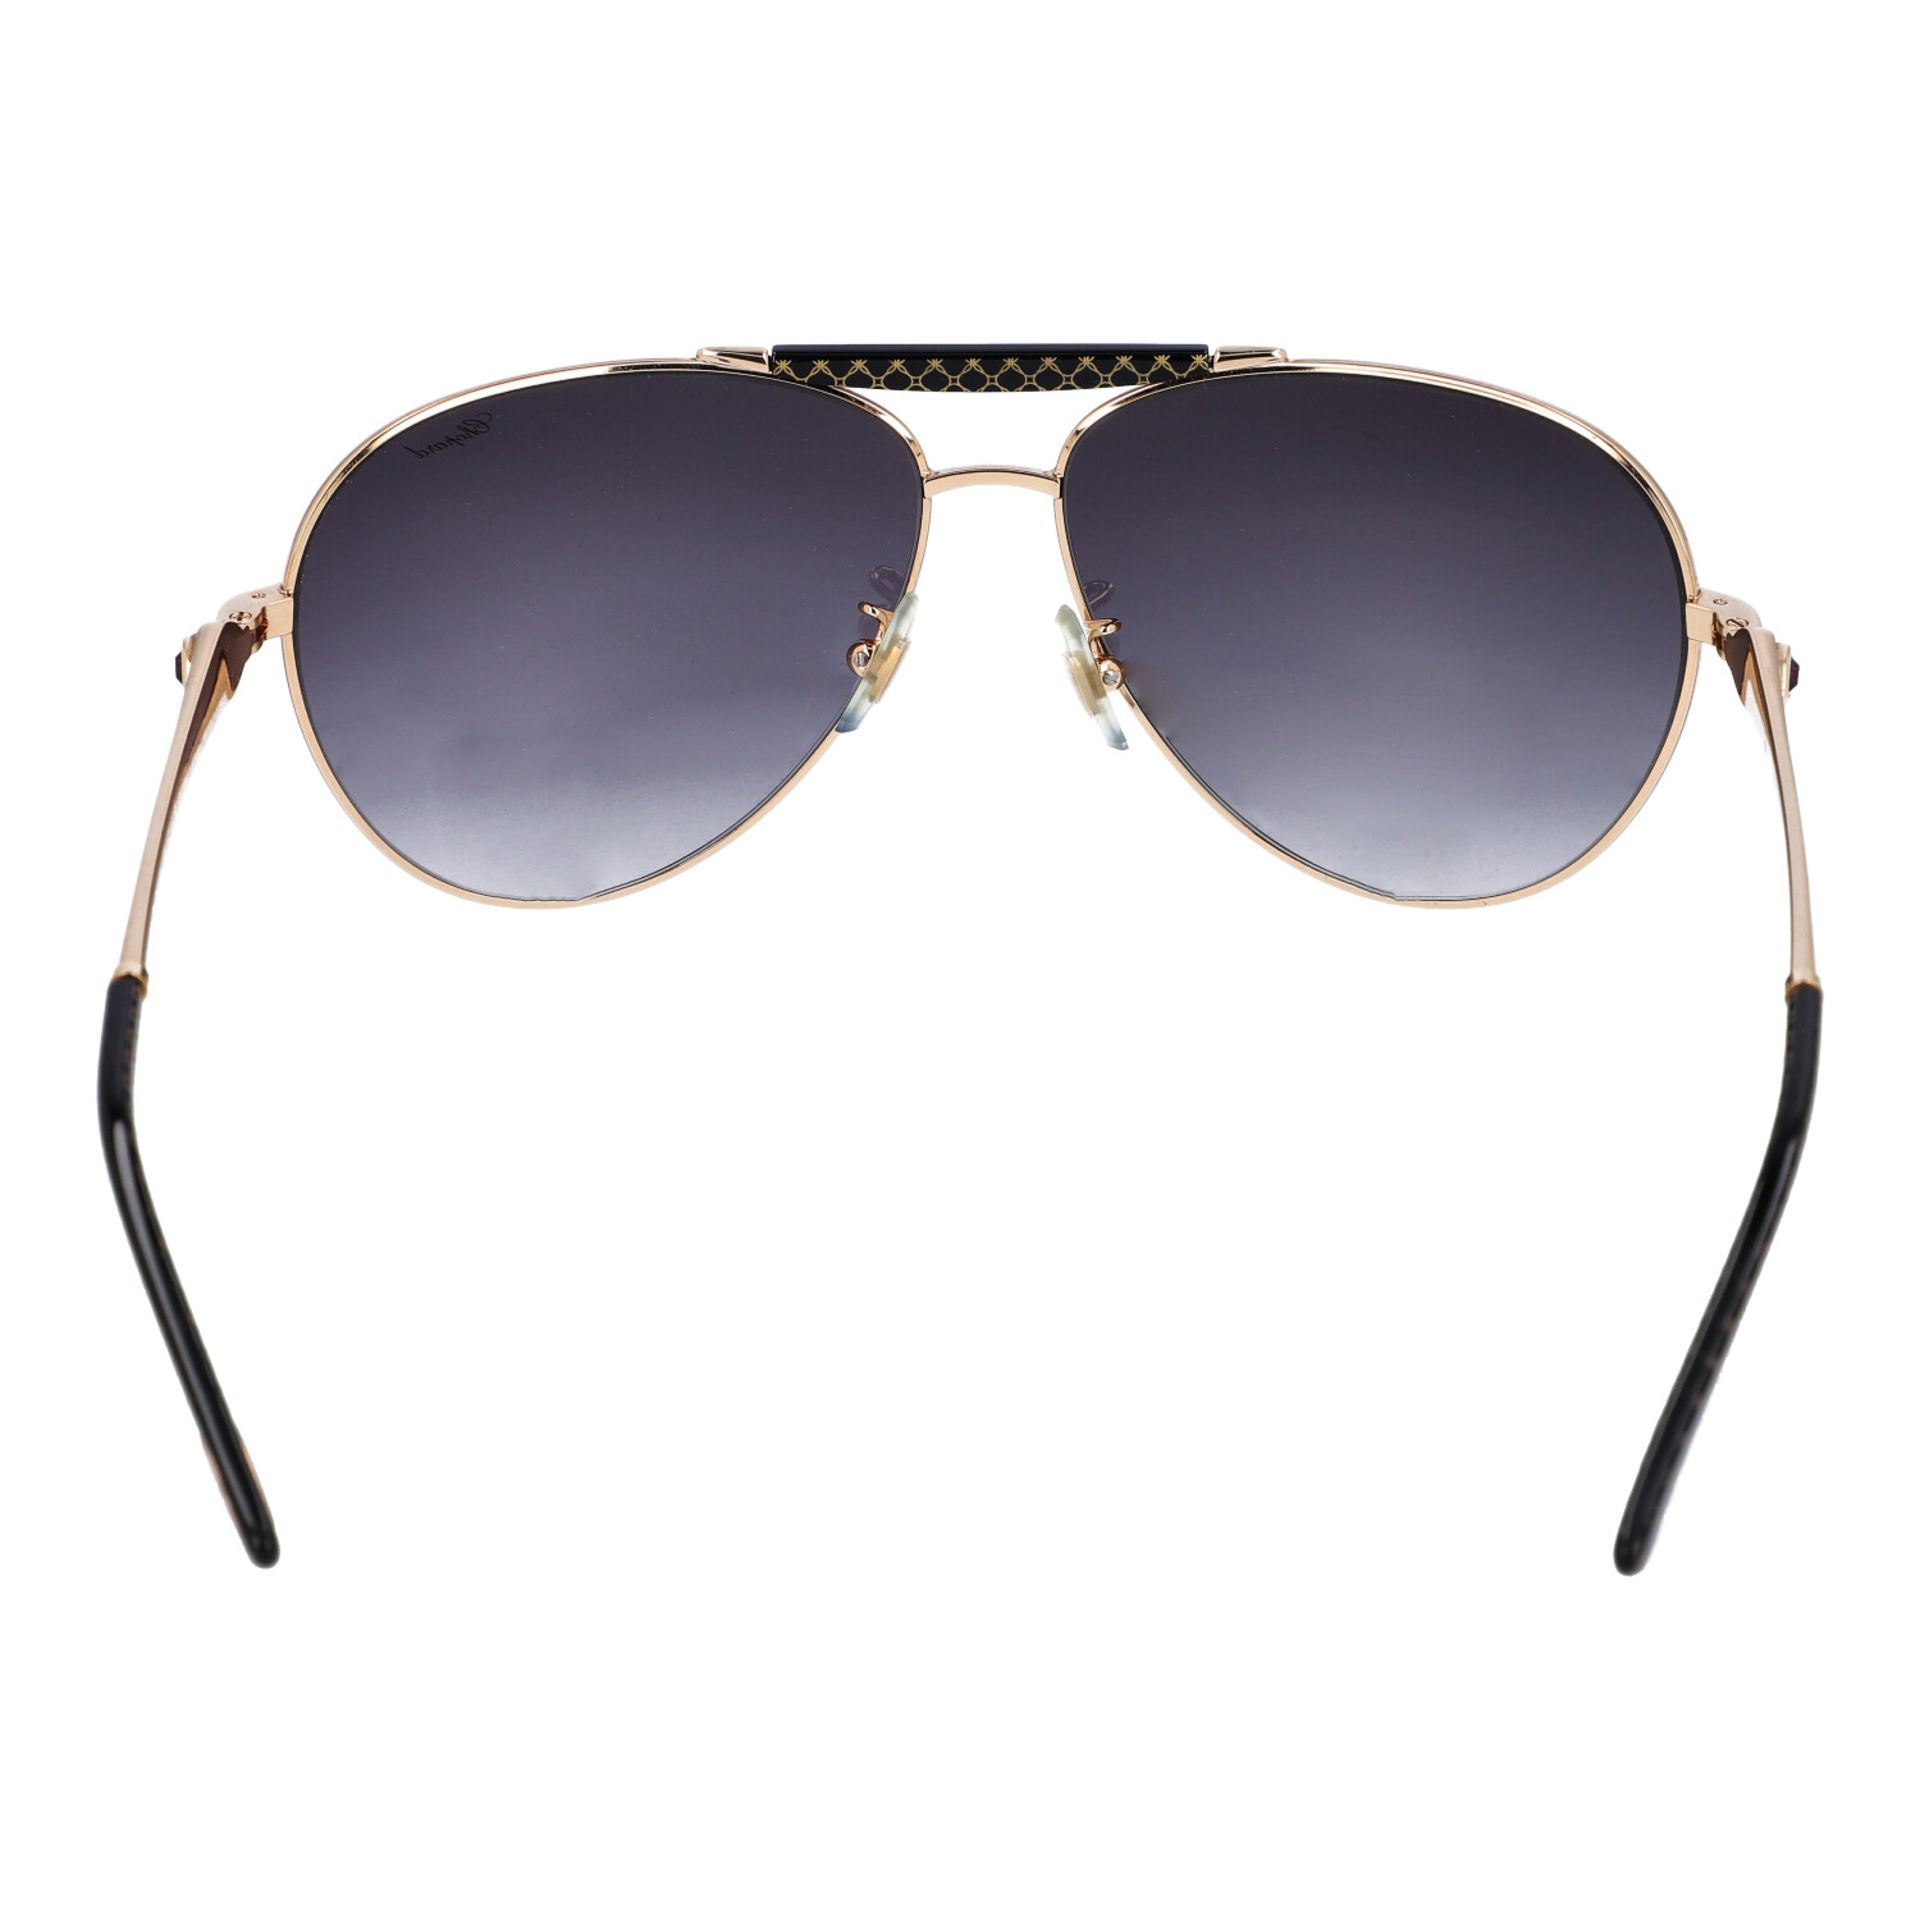 CHOPARD Sonnenbrille.NP.ca.: 600,-€. Goldafarbenes Metallgestell im Aviator-Design, dunkelgetönte - Bild 4 aus 5